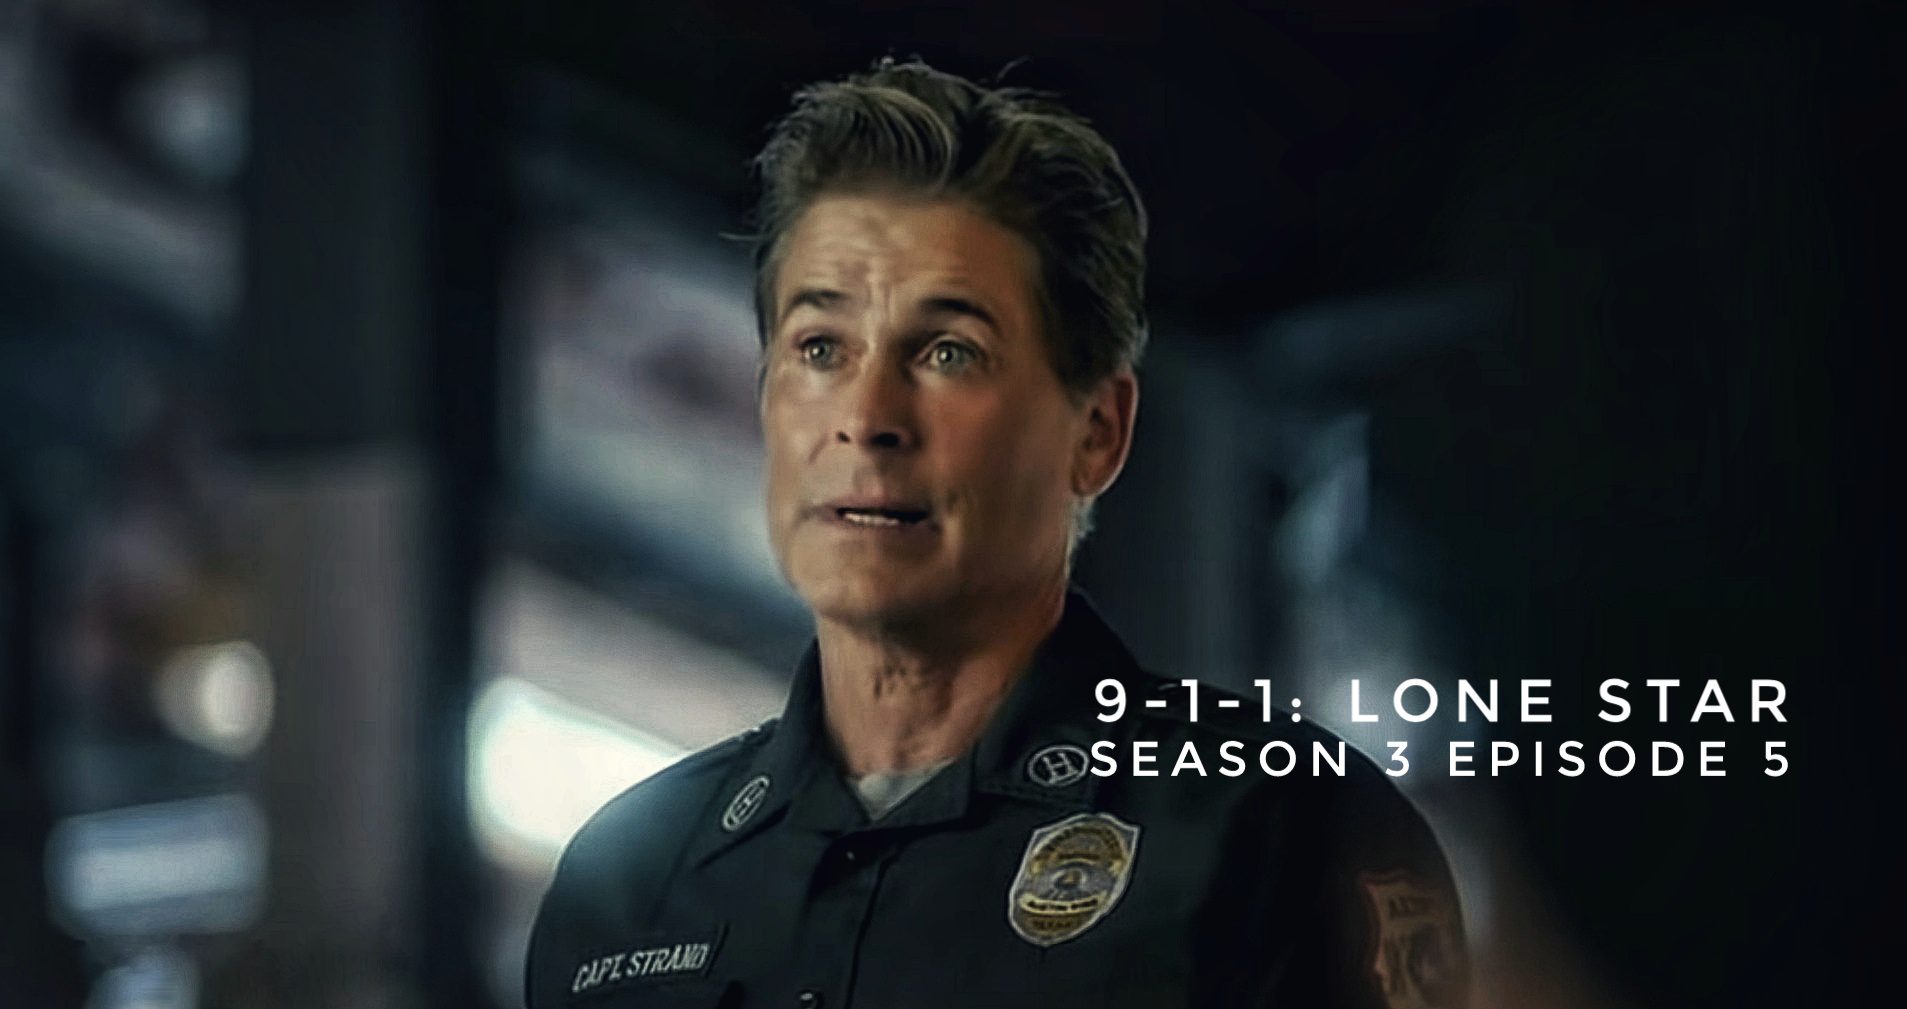 9-1-1: lone Star season 3 episode 5 release date